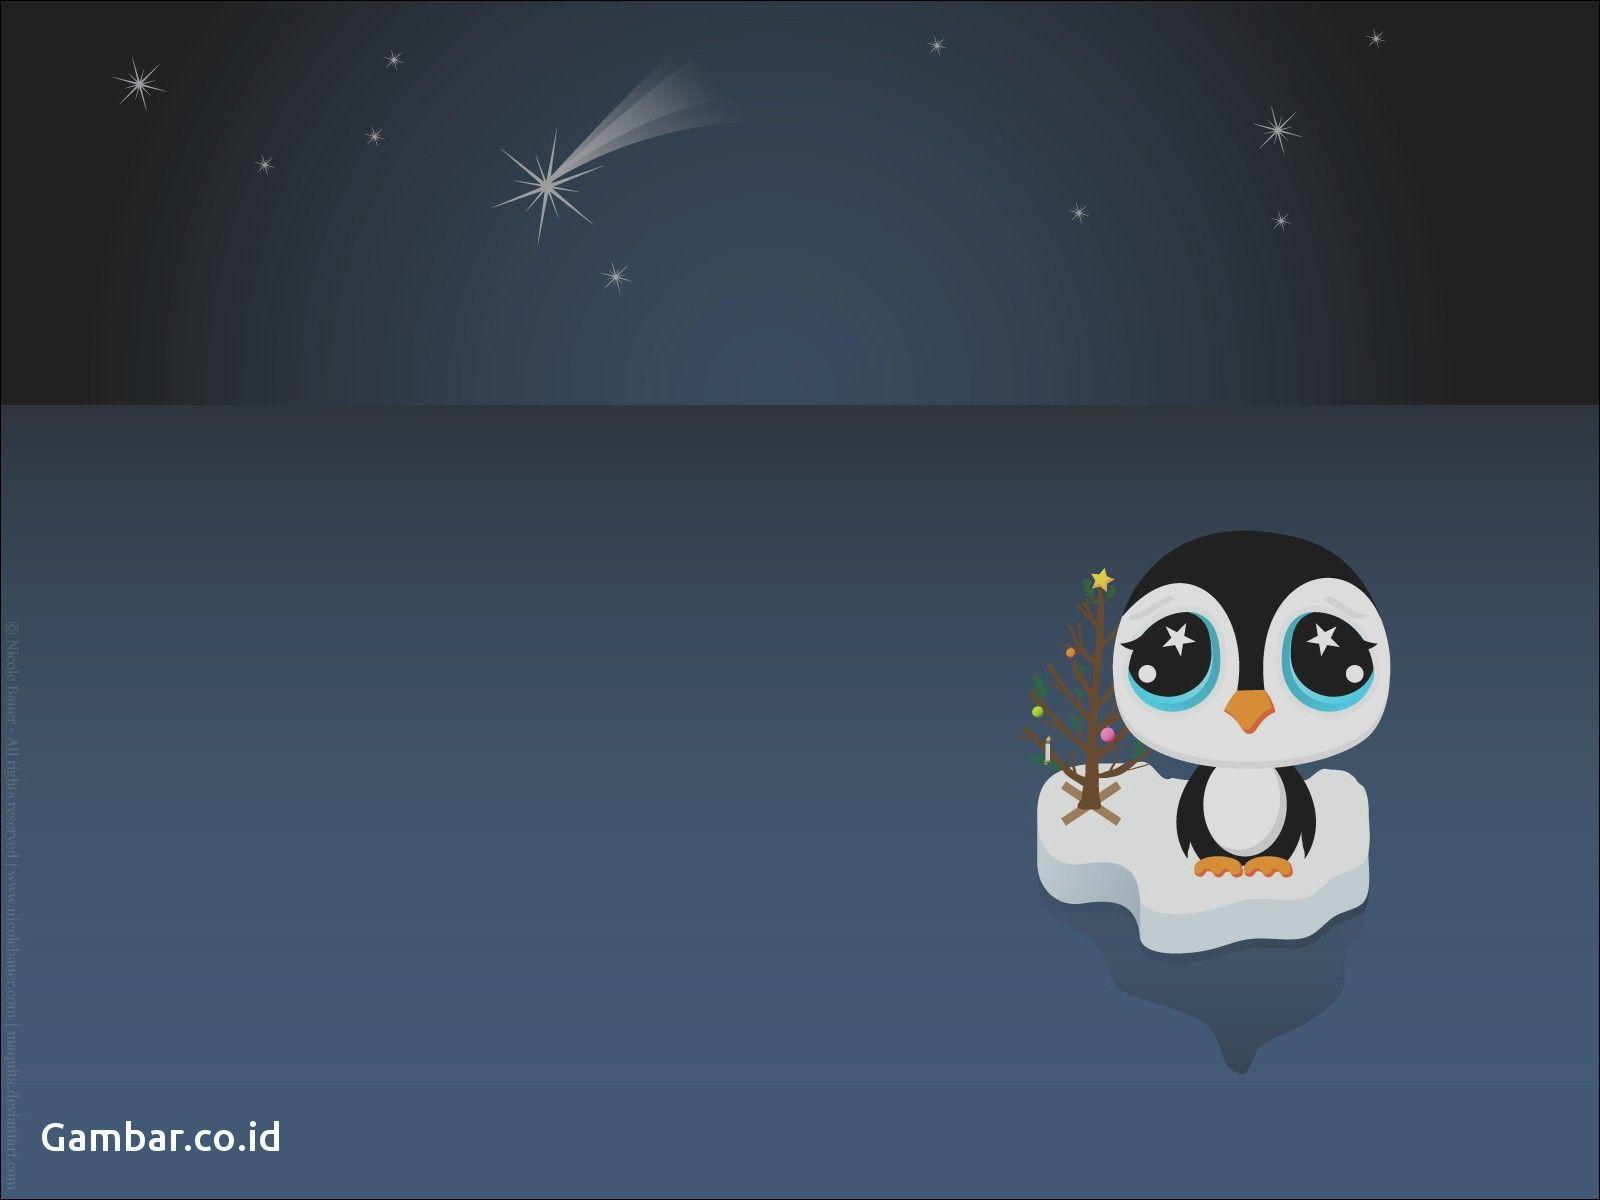 Download Gambar Wallpaper Panda Cartoon Christmas Wallpaper